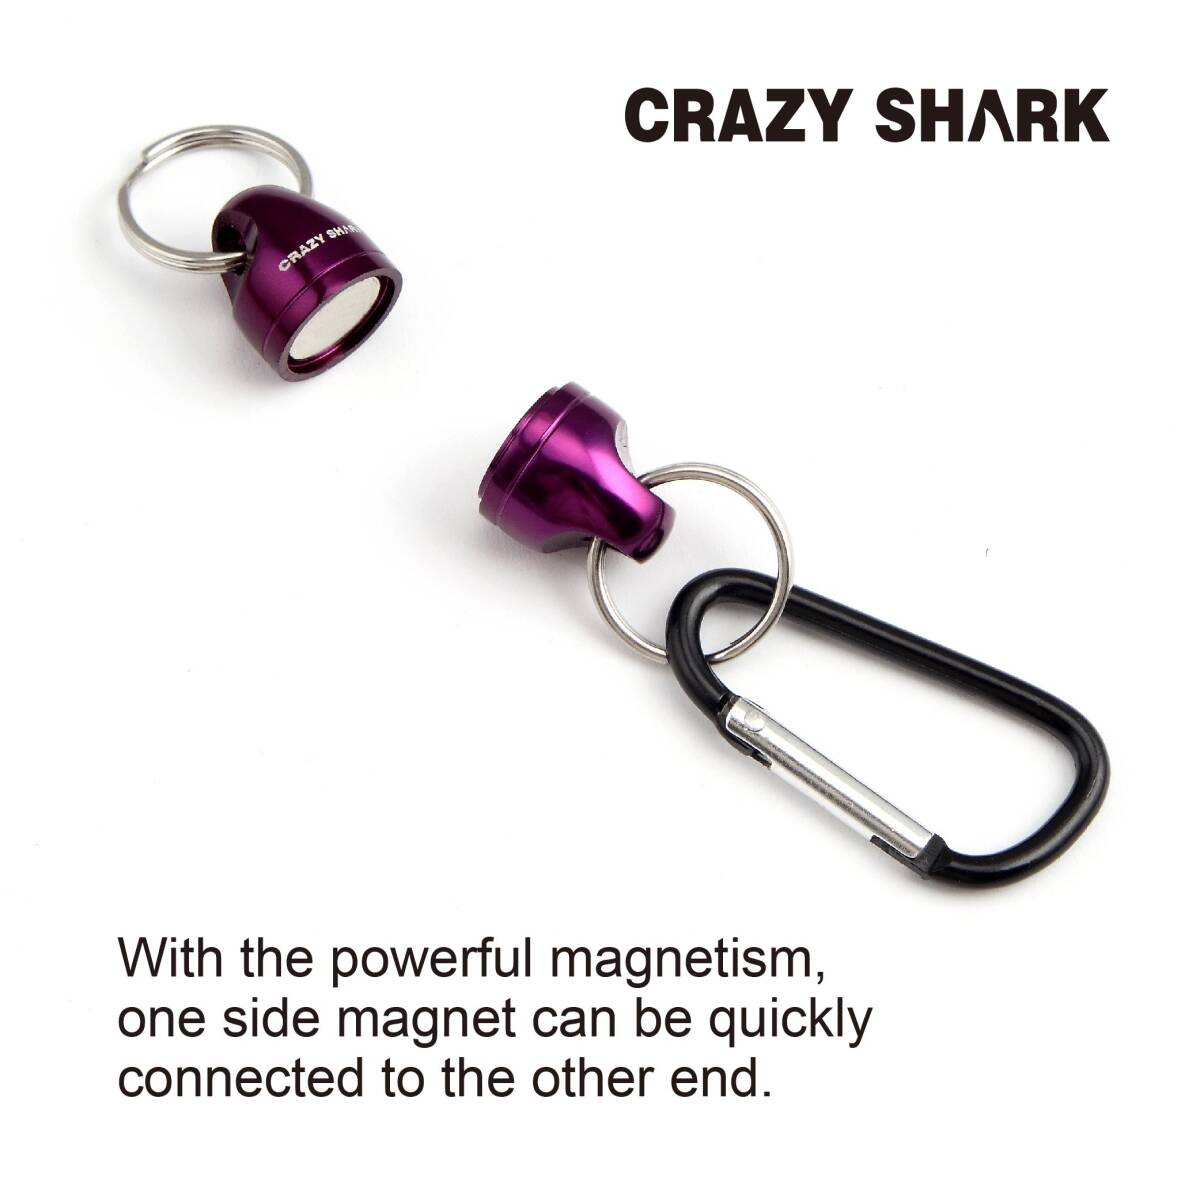 CRAZY SHARK マグネットリリーサー 超 強力 磁石 カラビナ 釣り マグネット 小型 軽量 ミニ ルアーホルダー磁気 強力磁石 荷重3.5kg 釣り_画像6